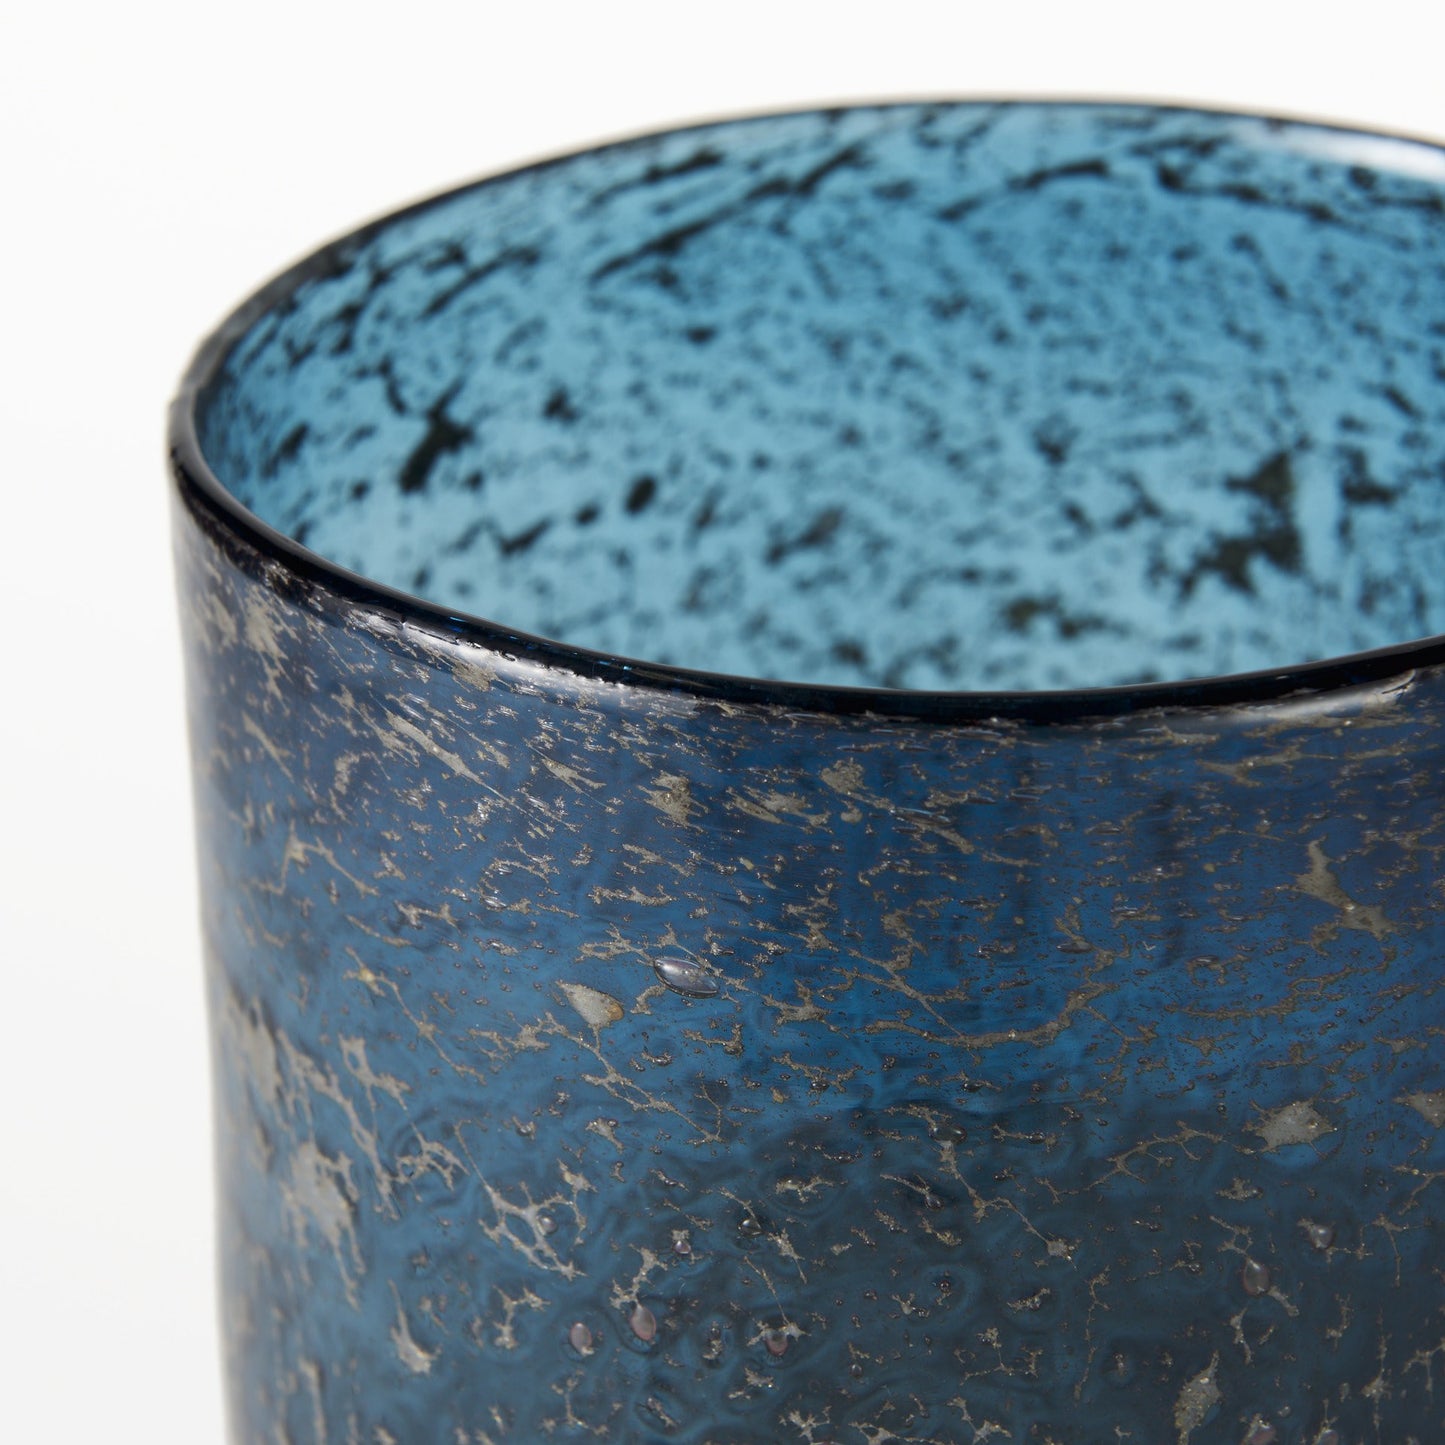 10" Artisan Blue and Gold Metallic Vase